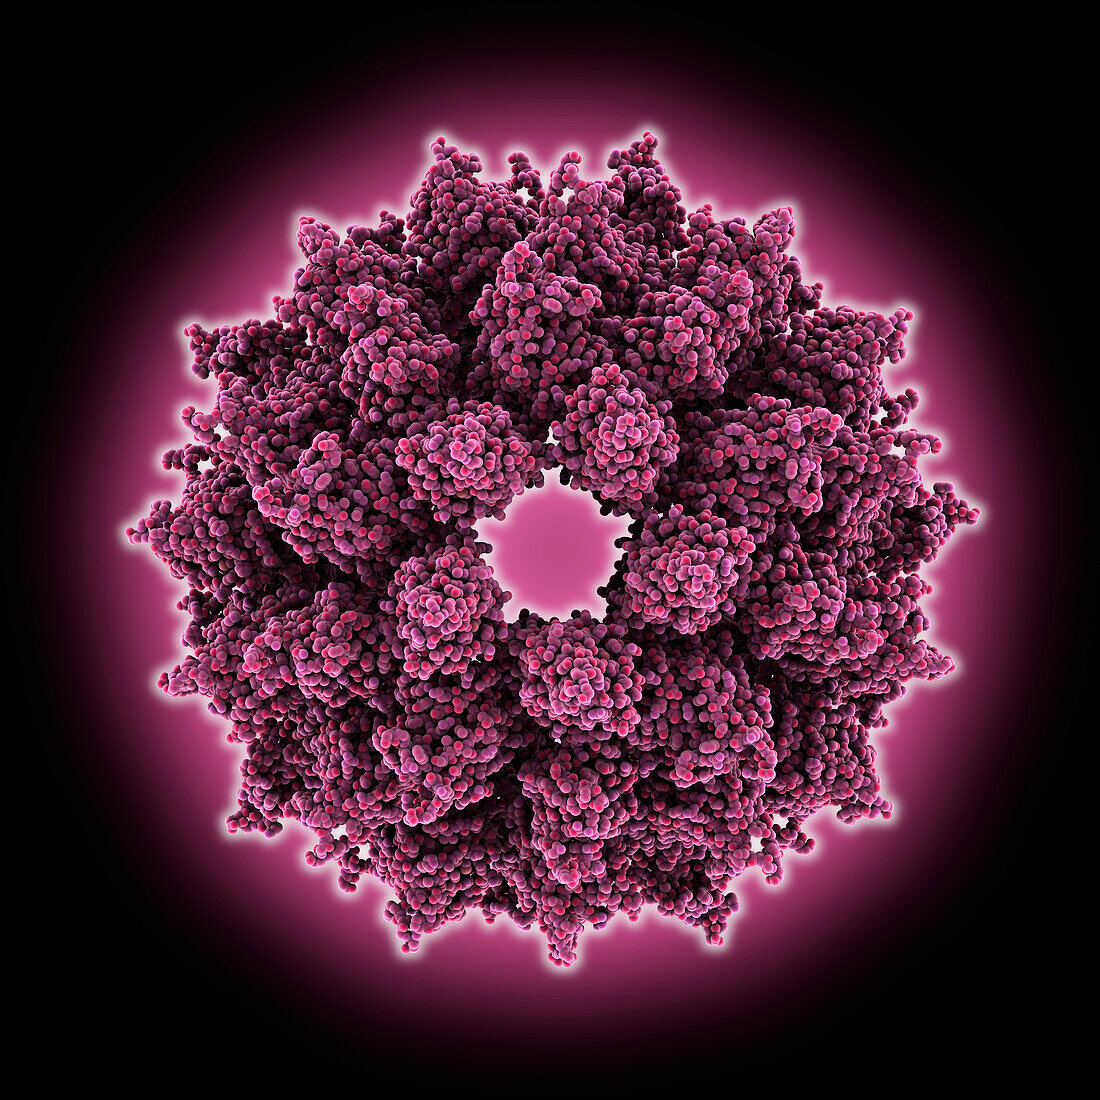 Alfalfa mosaic virus capsid, molecular model